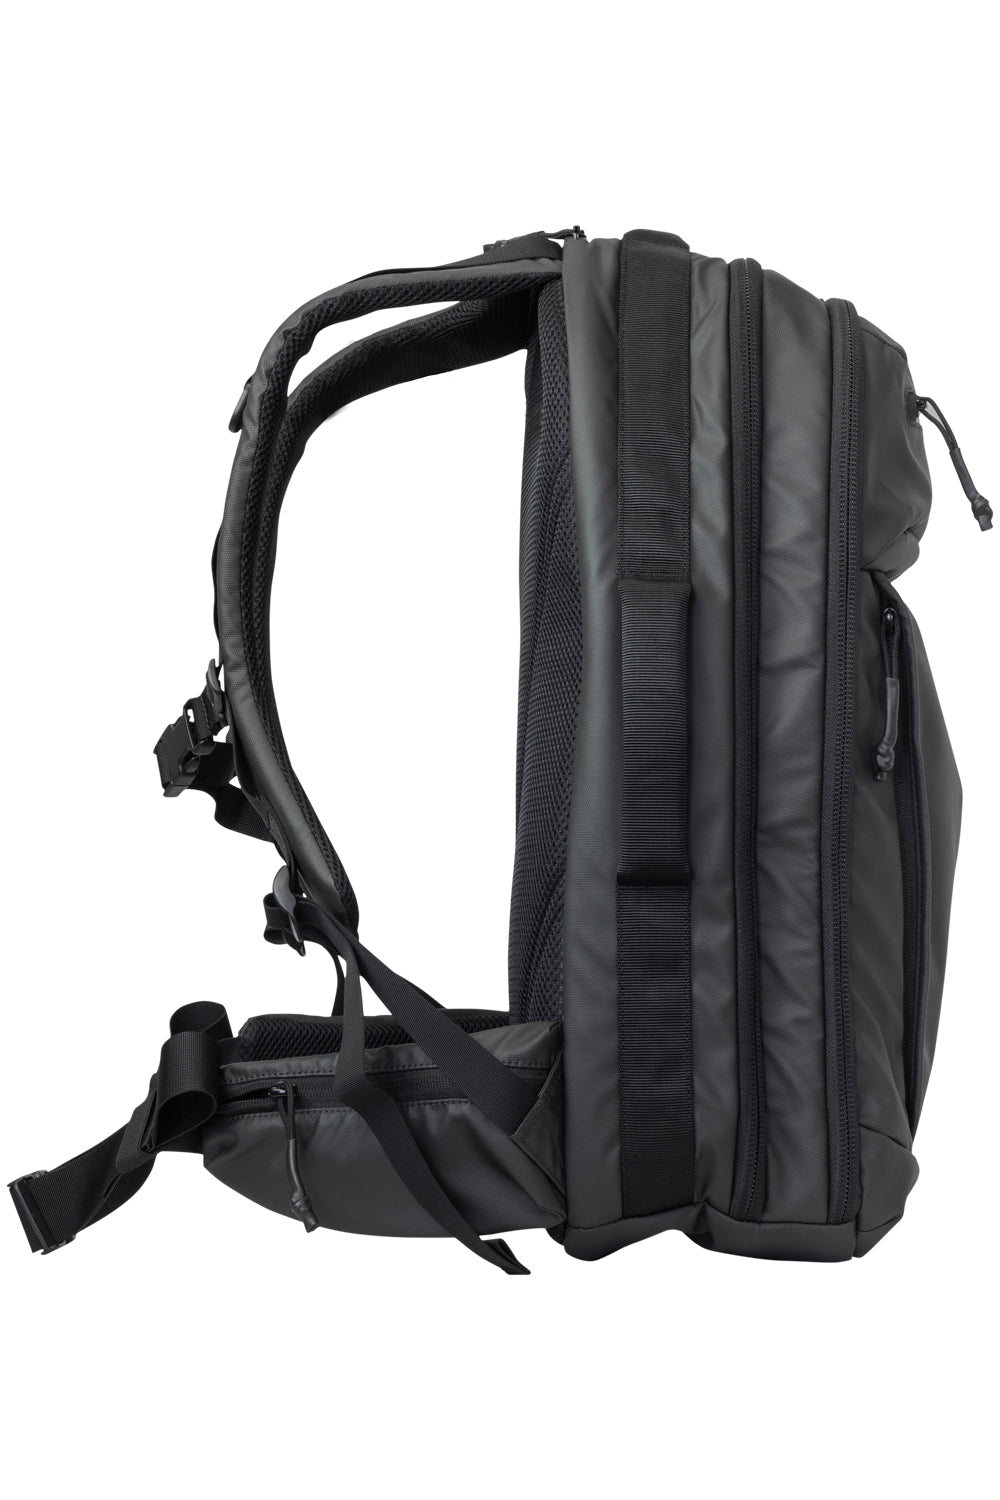 Elite Survival Systems Stealth SBR Backpack Black 7726-B